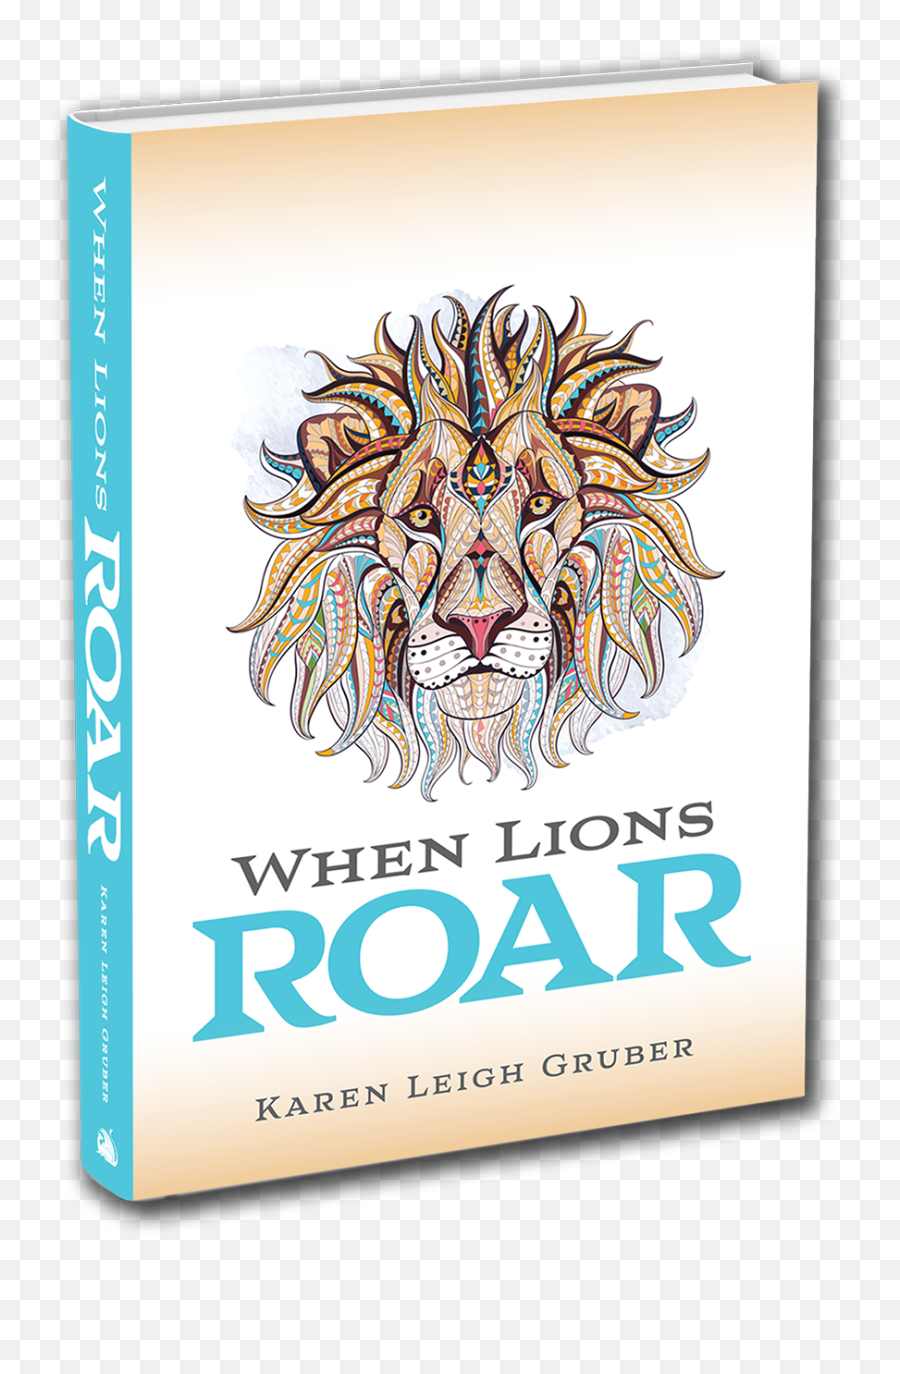 When Lions Roar Pre Emoji,Roar Like A Lion Emotions Book